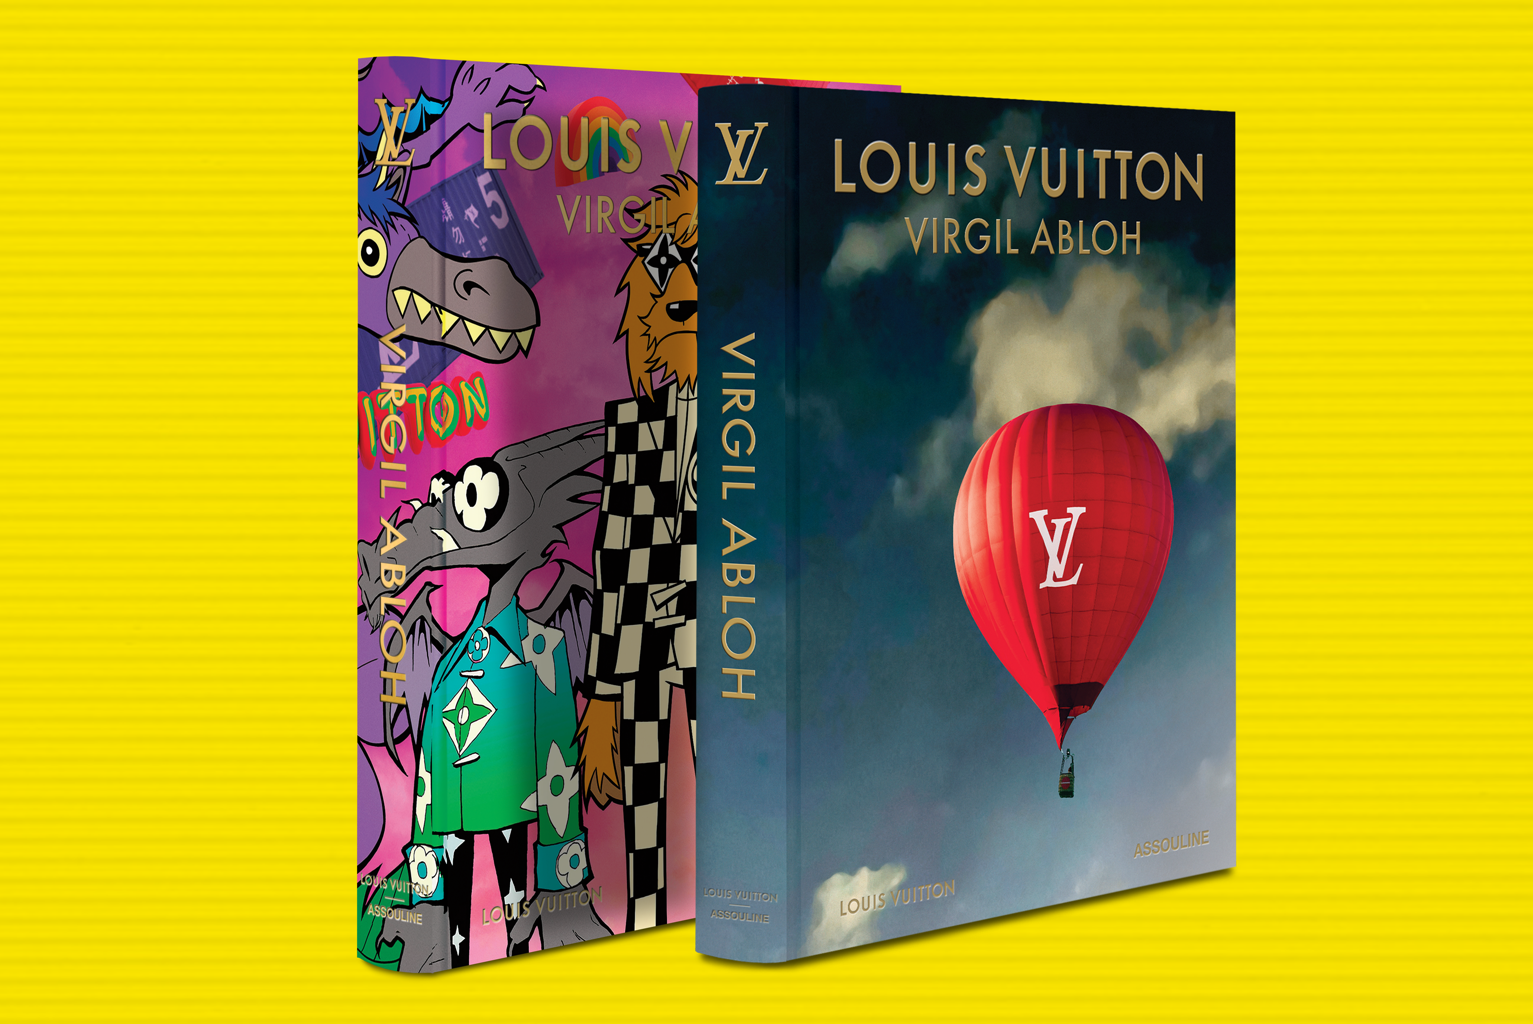 Virgil Abloh Launches Louis Vuitton: 'Walk in The Park